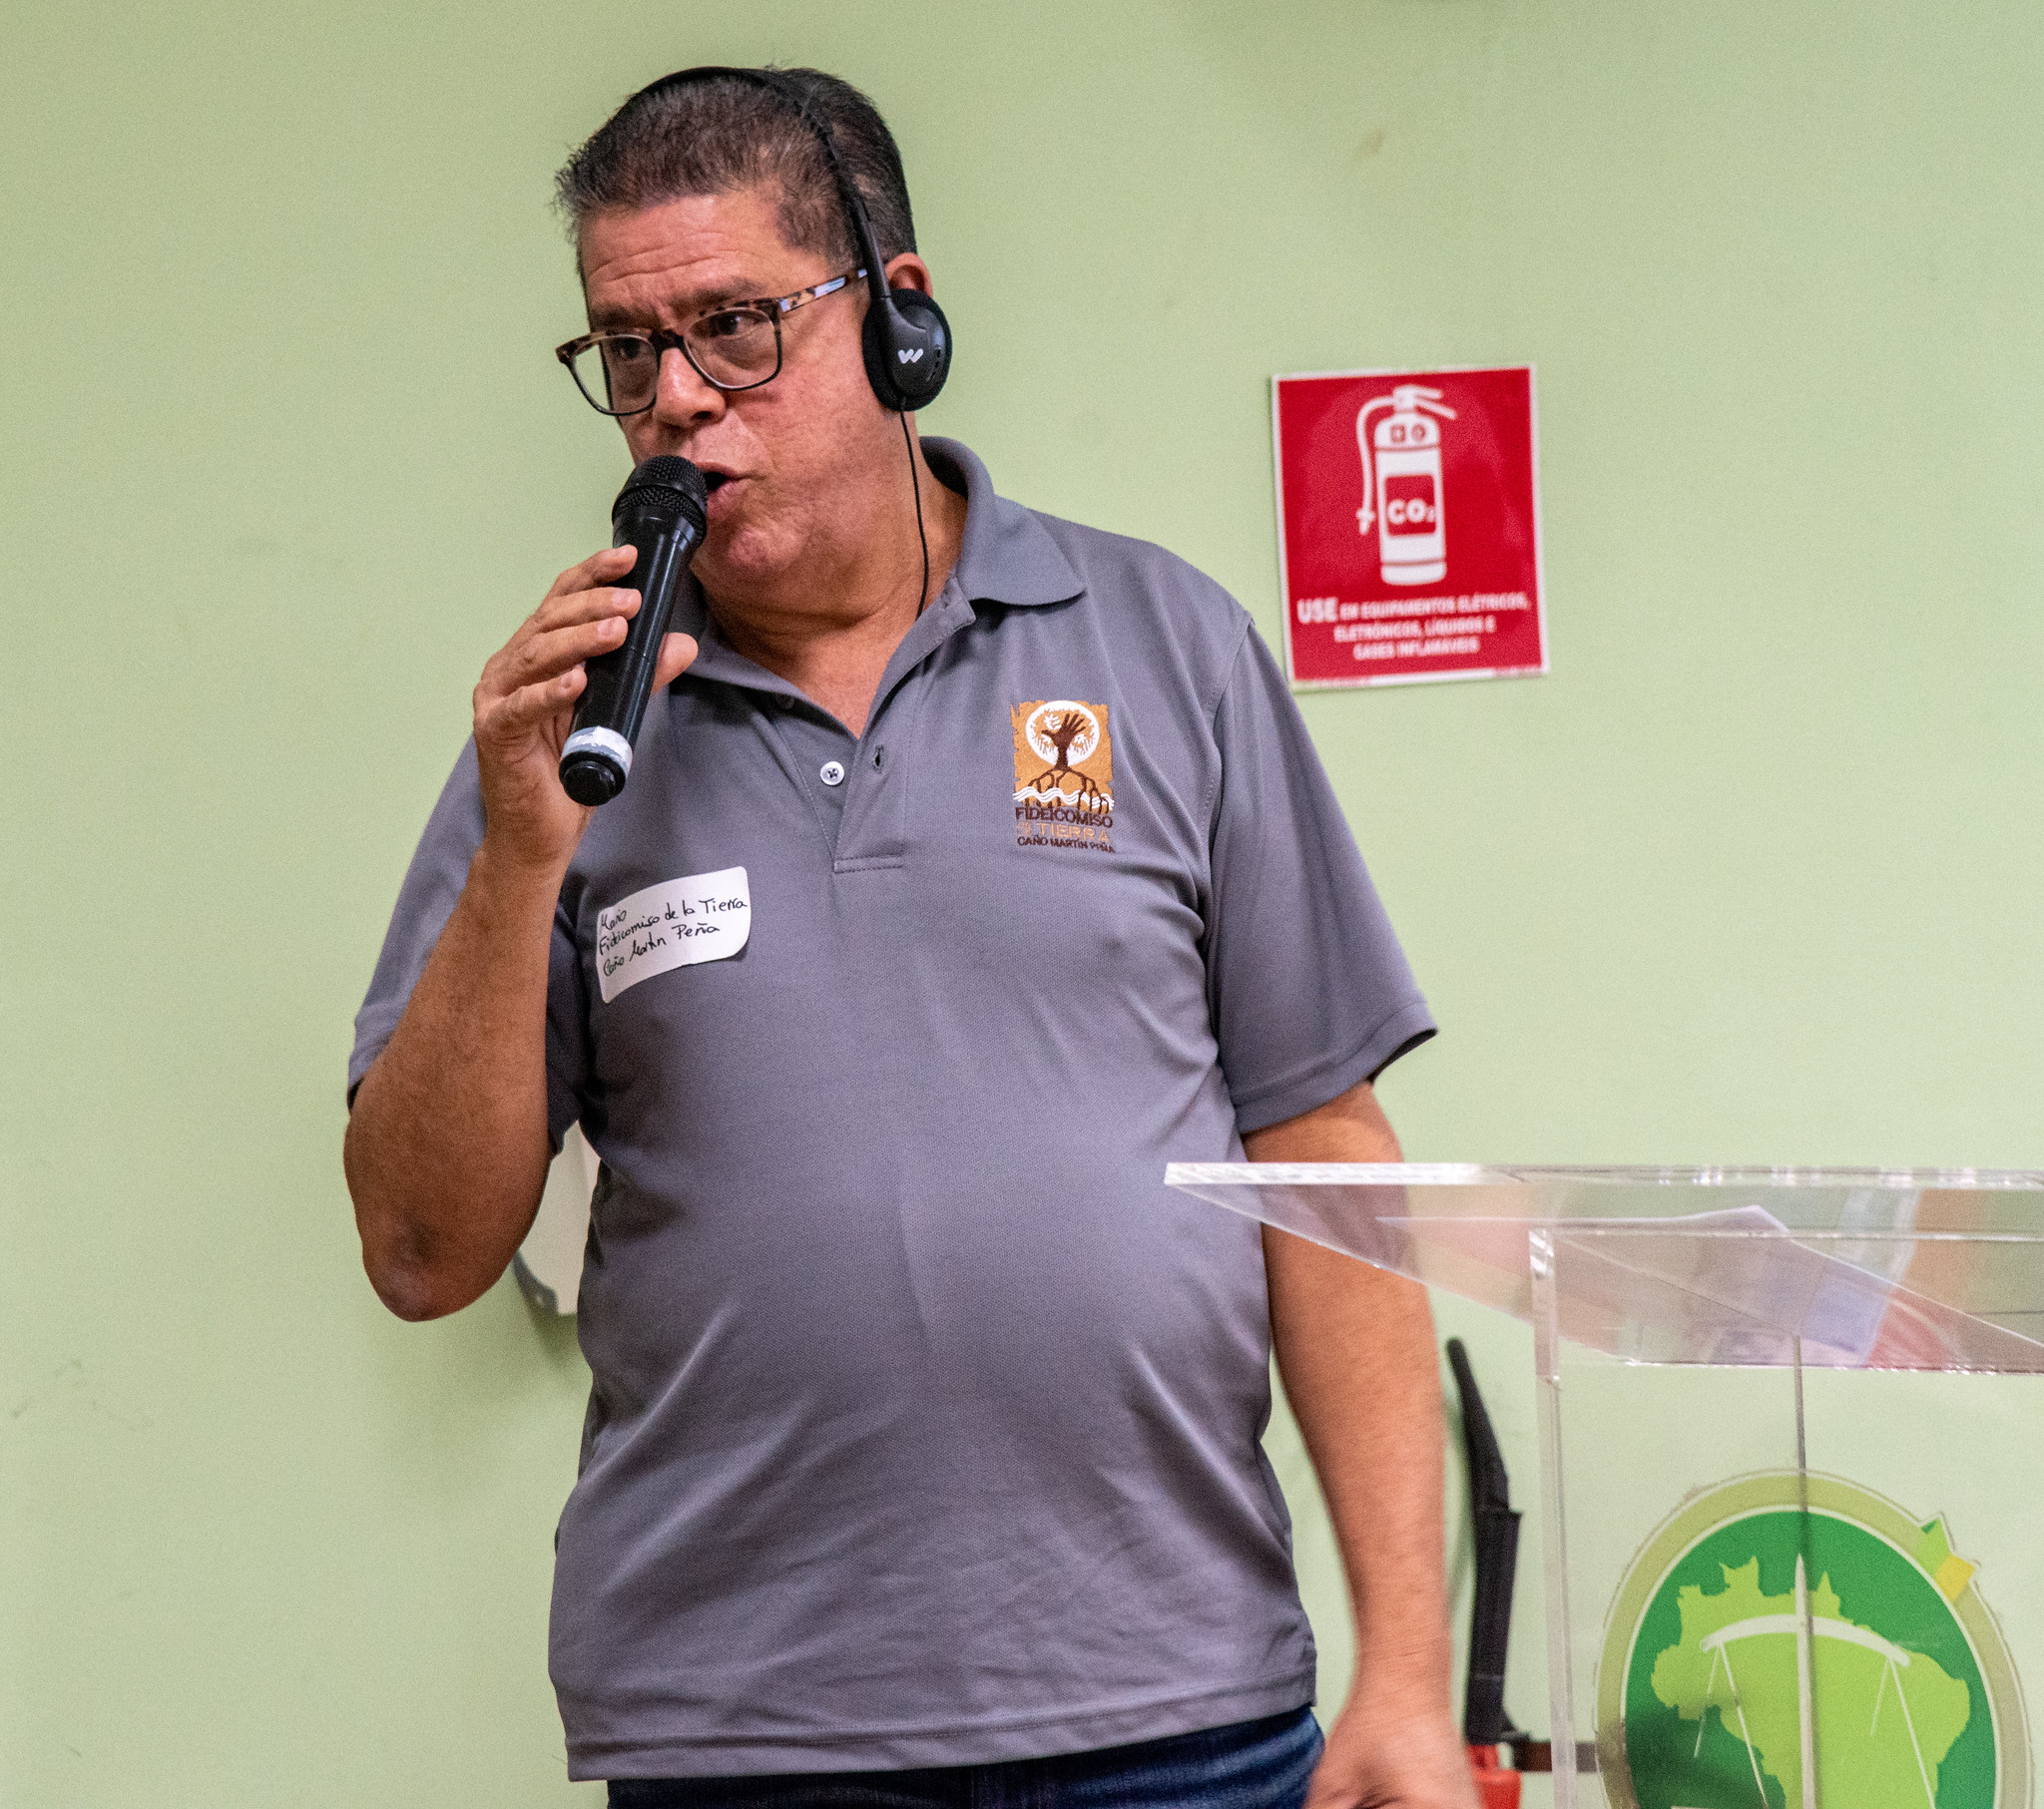 Mario Nuñez, Diretor Executivo fala sobre a experiência do Fideicomiso de la Tierra Caño Martín Peña no Porto Rico, primeiro TTC em assentamento informal na América Latina. Foto: Bárbara Dias